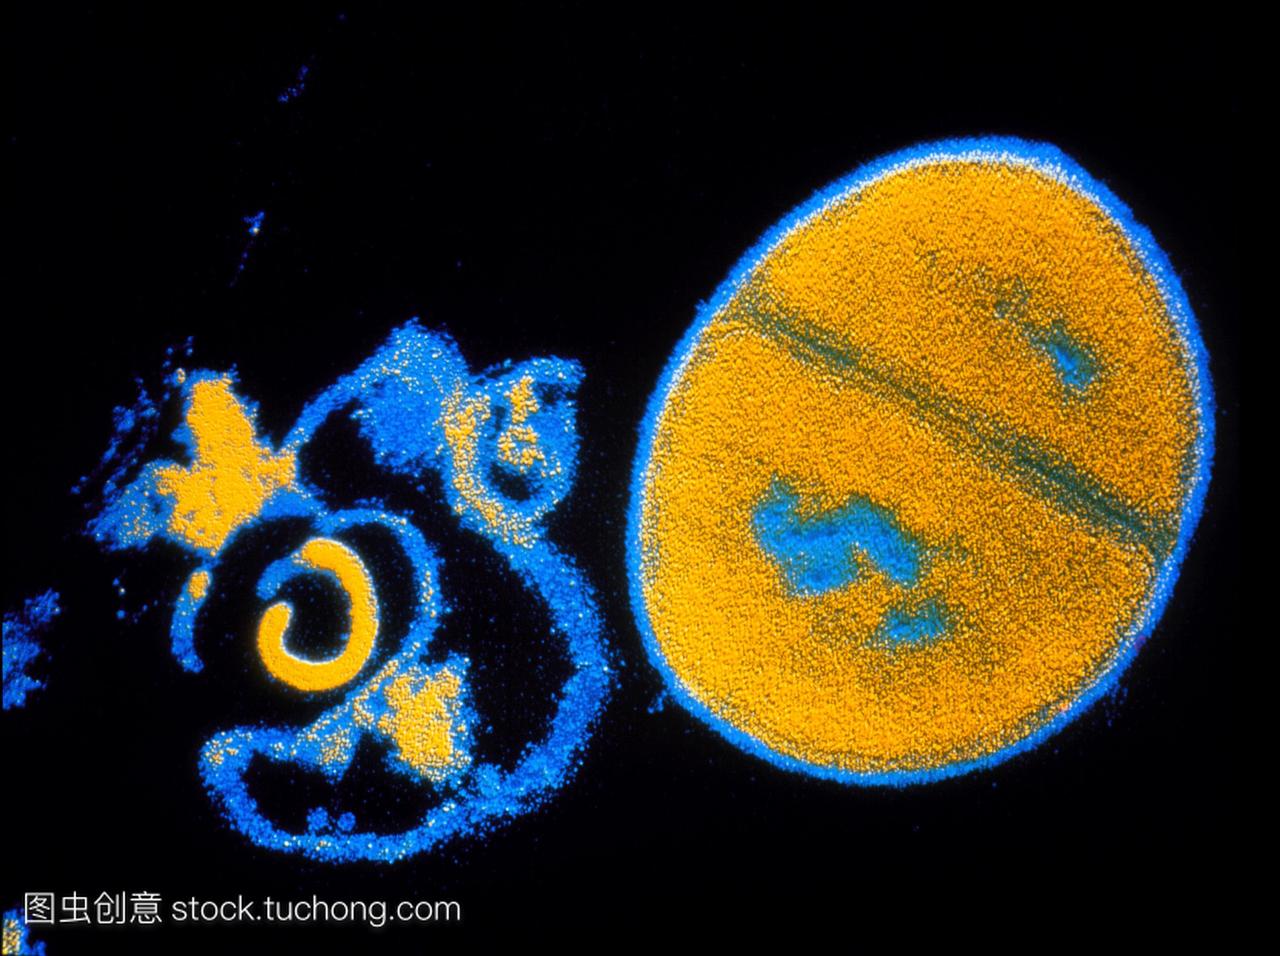 电子显微镜tem显示抗生素对金黄色葡萄球菌的